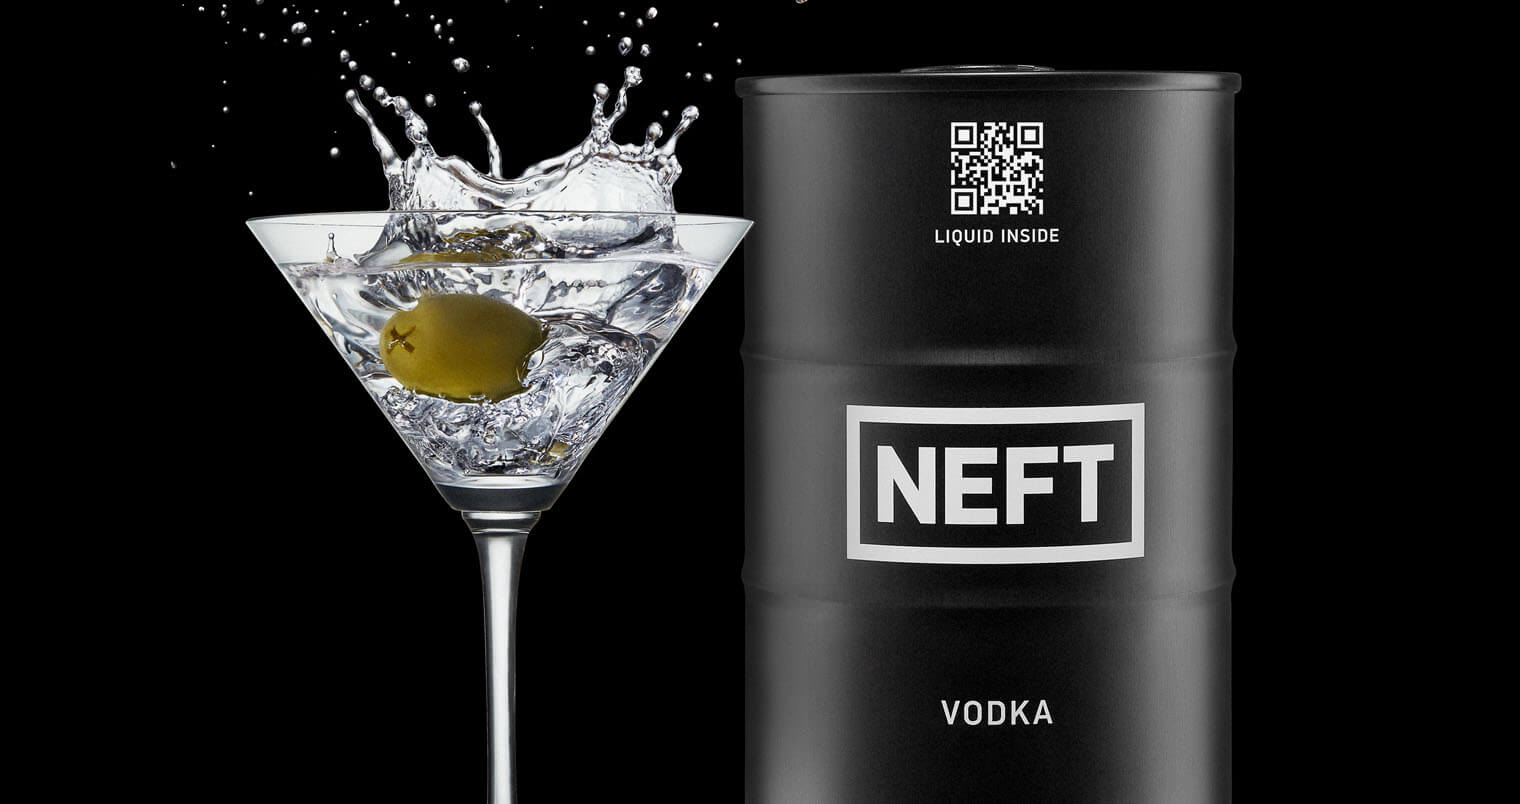 NEFT Premium Vodka, featured image